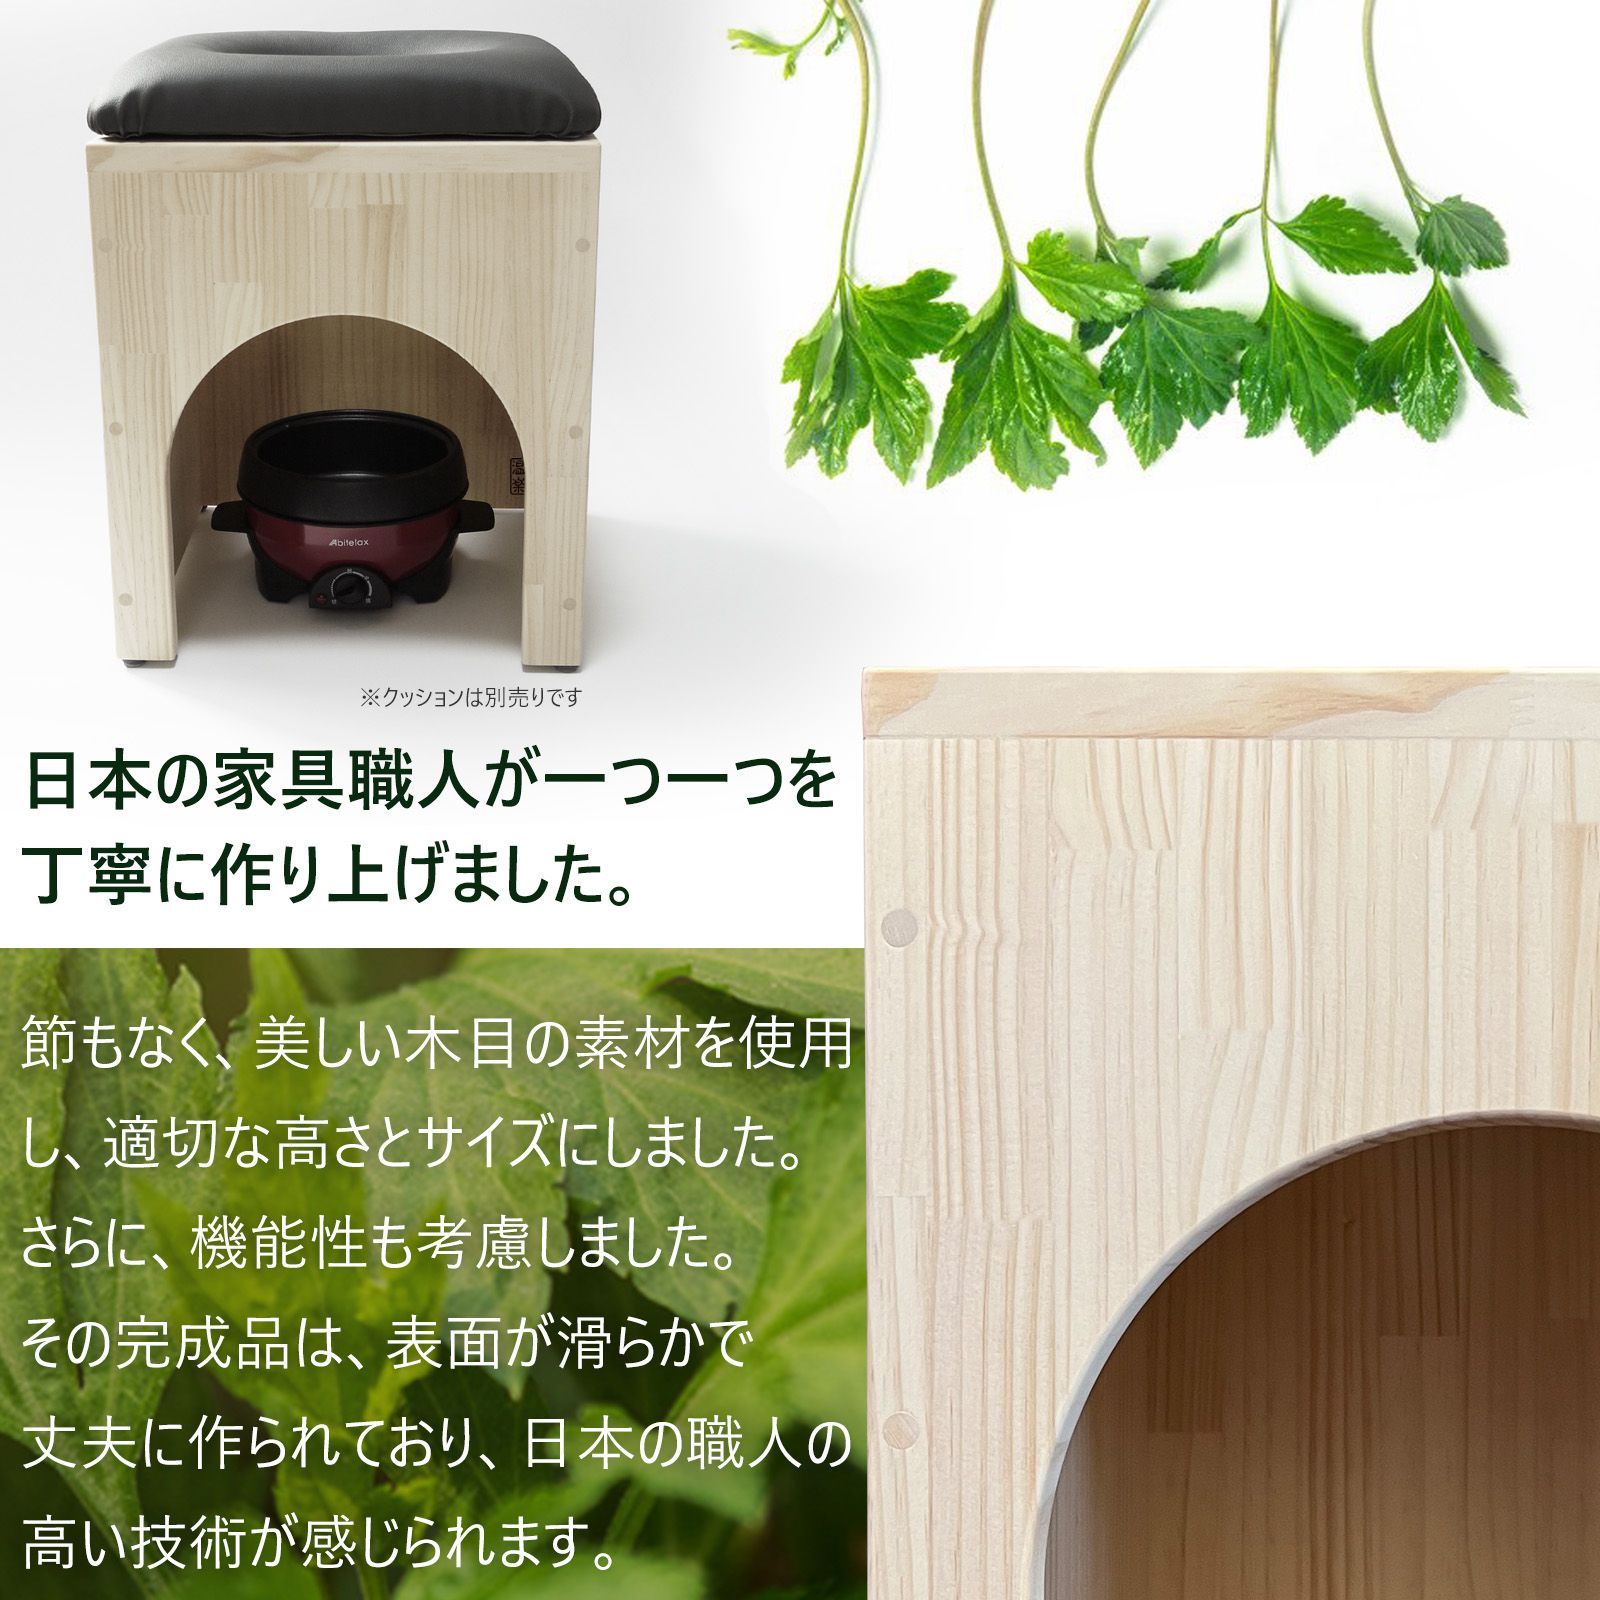 日本の家具職人の手作り よもぎ蒸し 椅子 丈夫 頑丈 木製椅子 単品 温